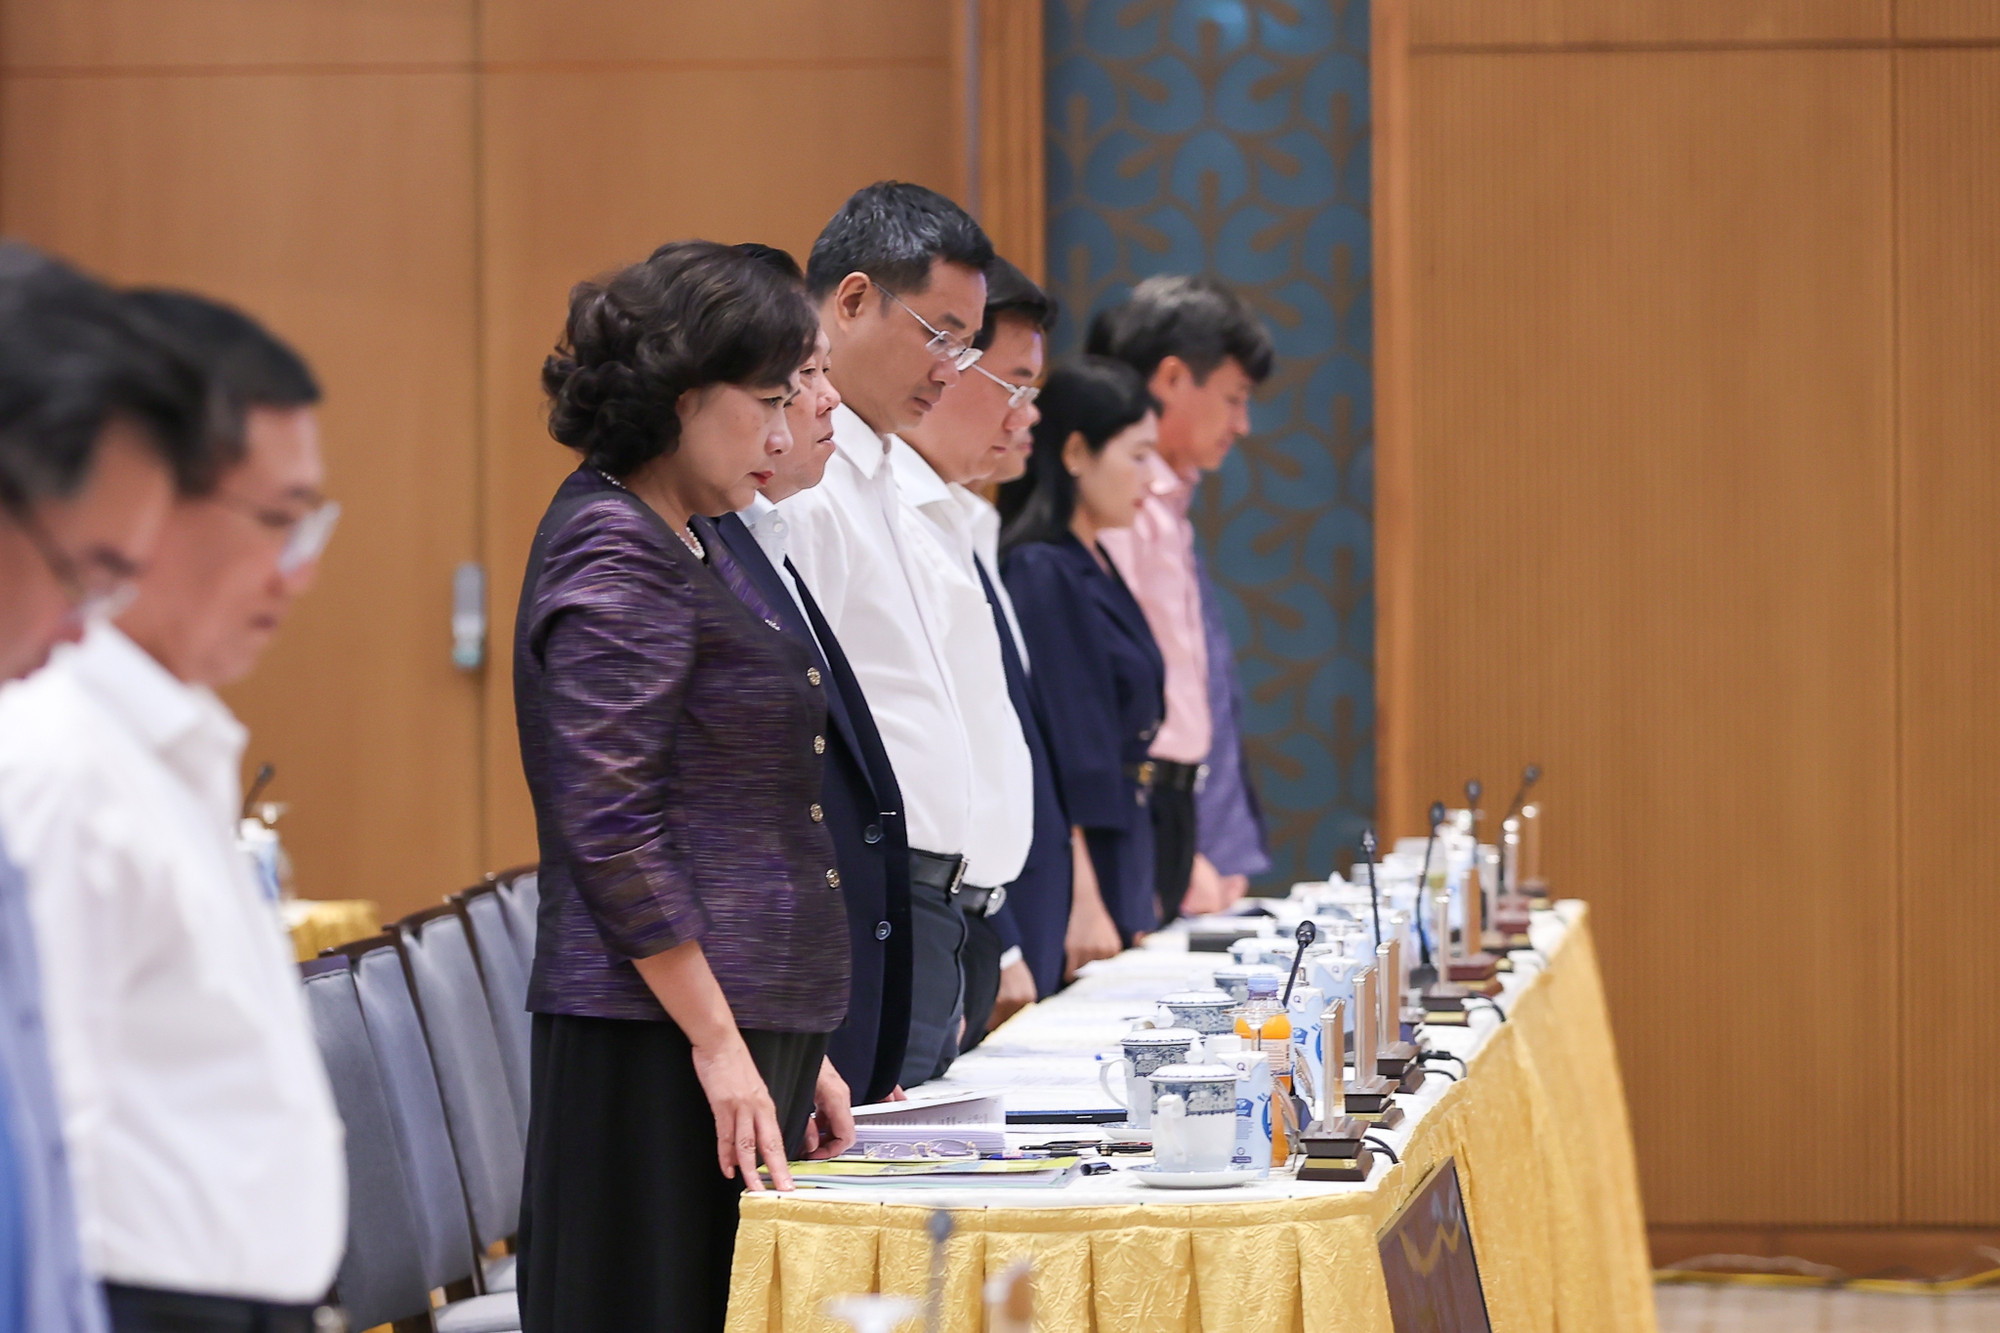 Thủ tướng và các đại biểu dành phút mặc niệm để tưởng nhớ các nạn nhân tử vong trong vụ cháy tại Hà Nội và 7 nạn nhân tử vong do lũ quét tại Lào Cai đêm 12/9, rạng sáng 13/9 - Ảnh: VGP/Nhật Bắc